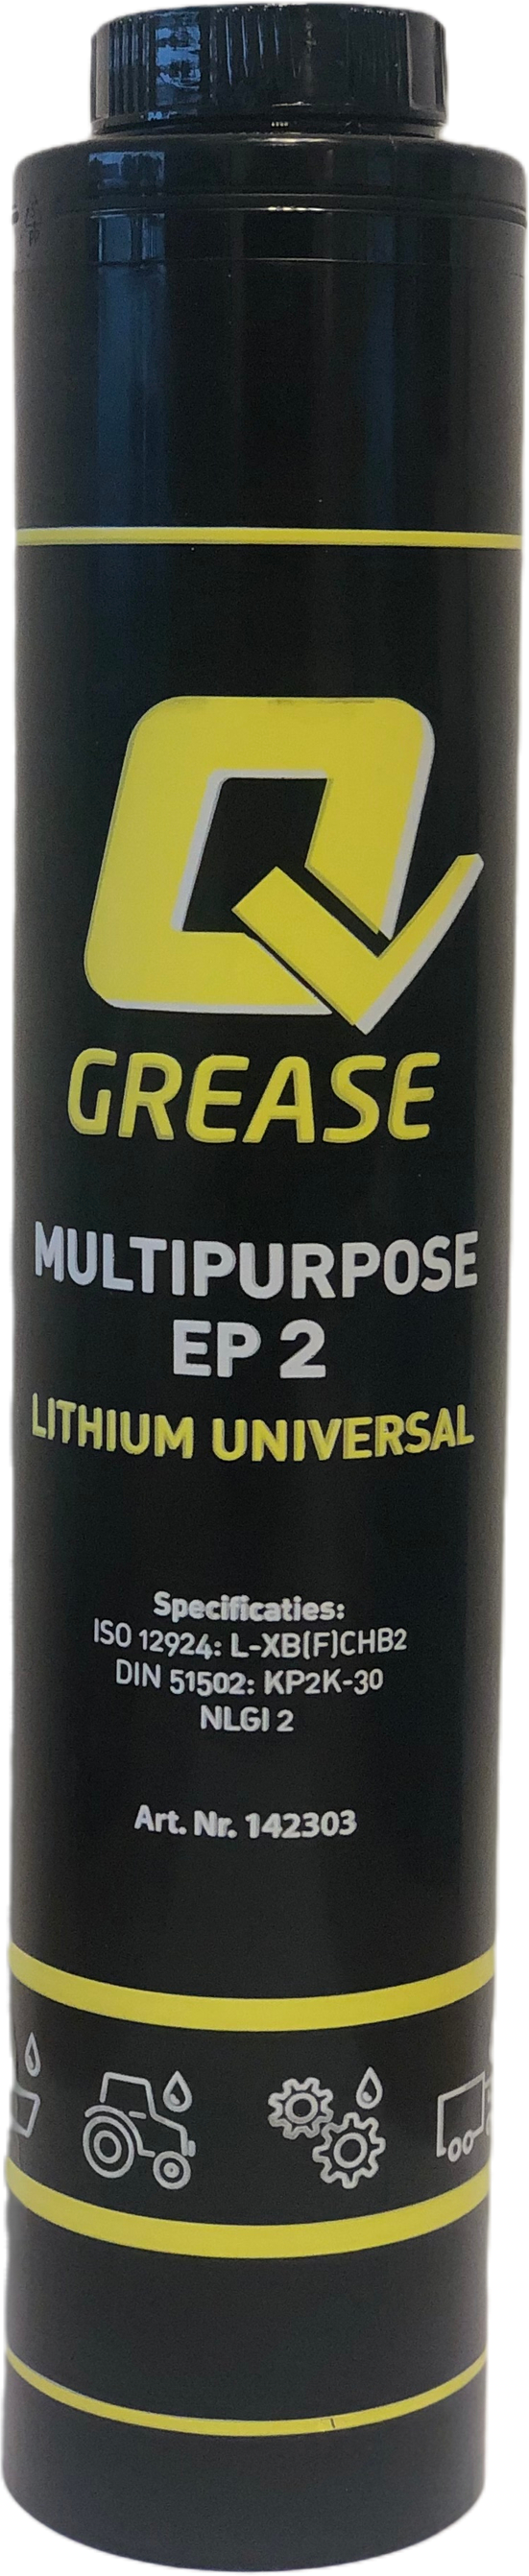 OUT0239-OQ023 Quality Grease Multipurpose EP2 is een universeel algemeen toepasbaar Lithium vet.